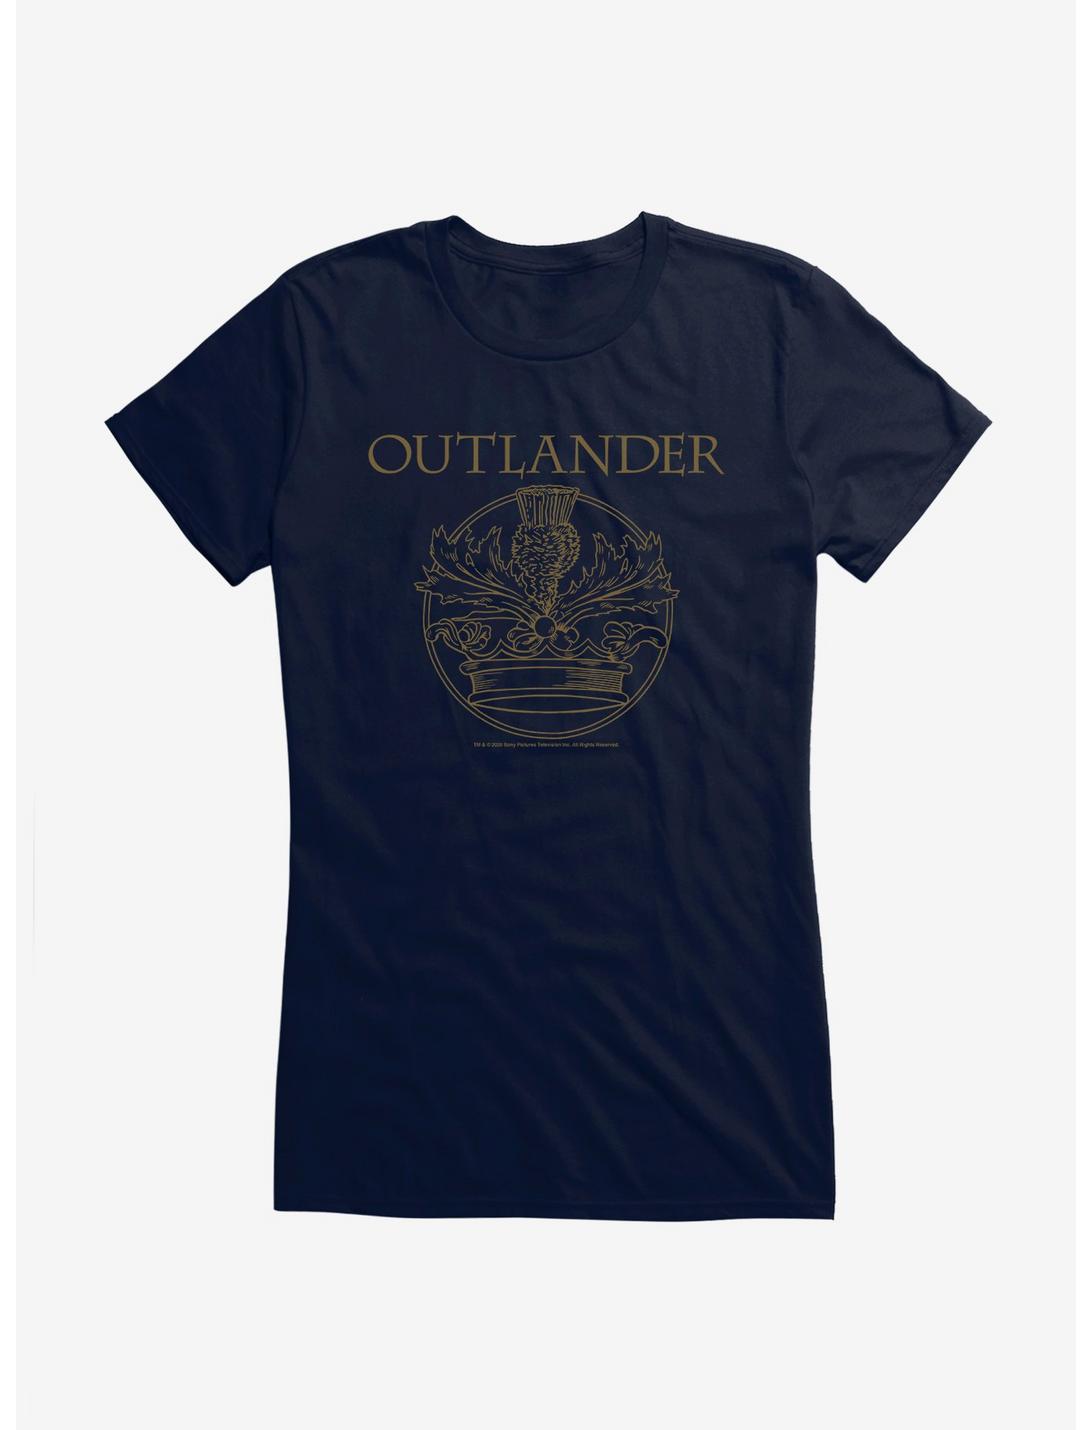 Outlander Crown Crest Girls T-Shirt, NAVY, hi-res